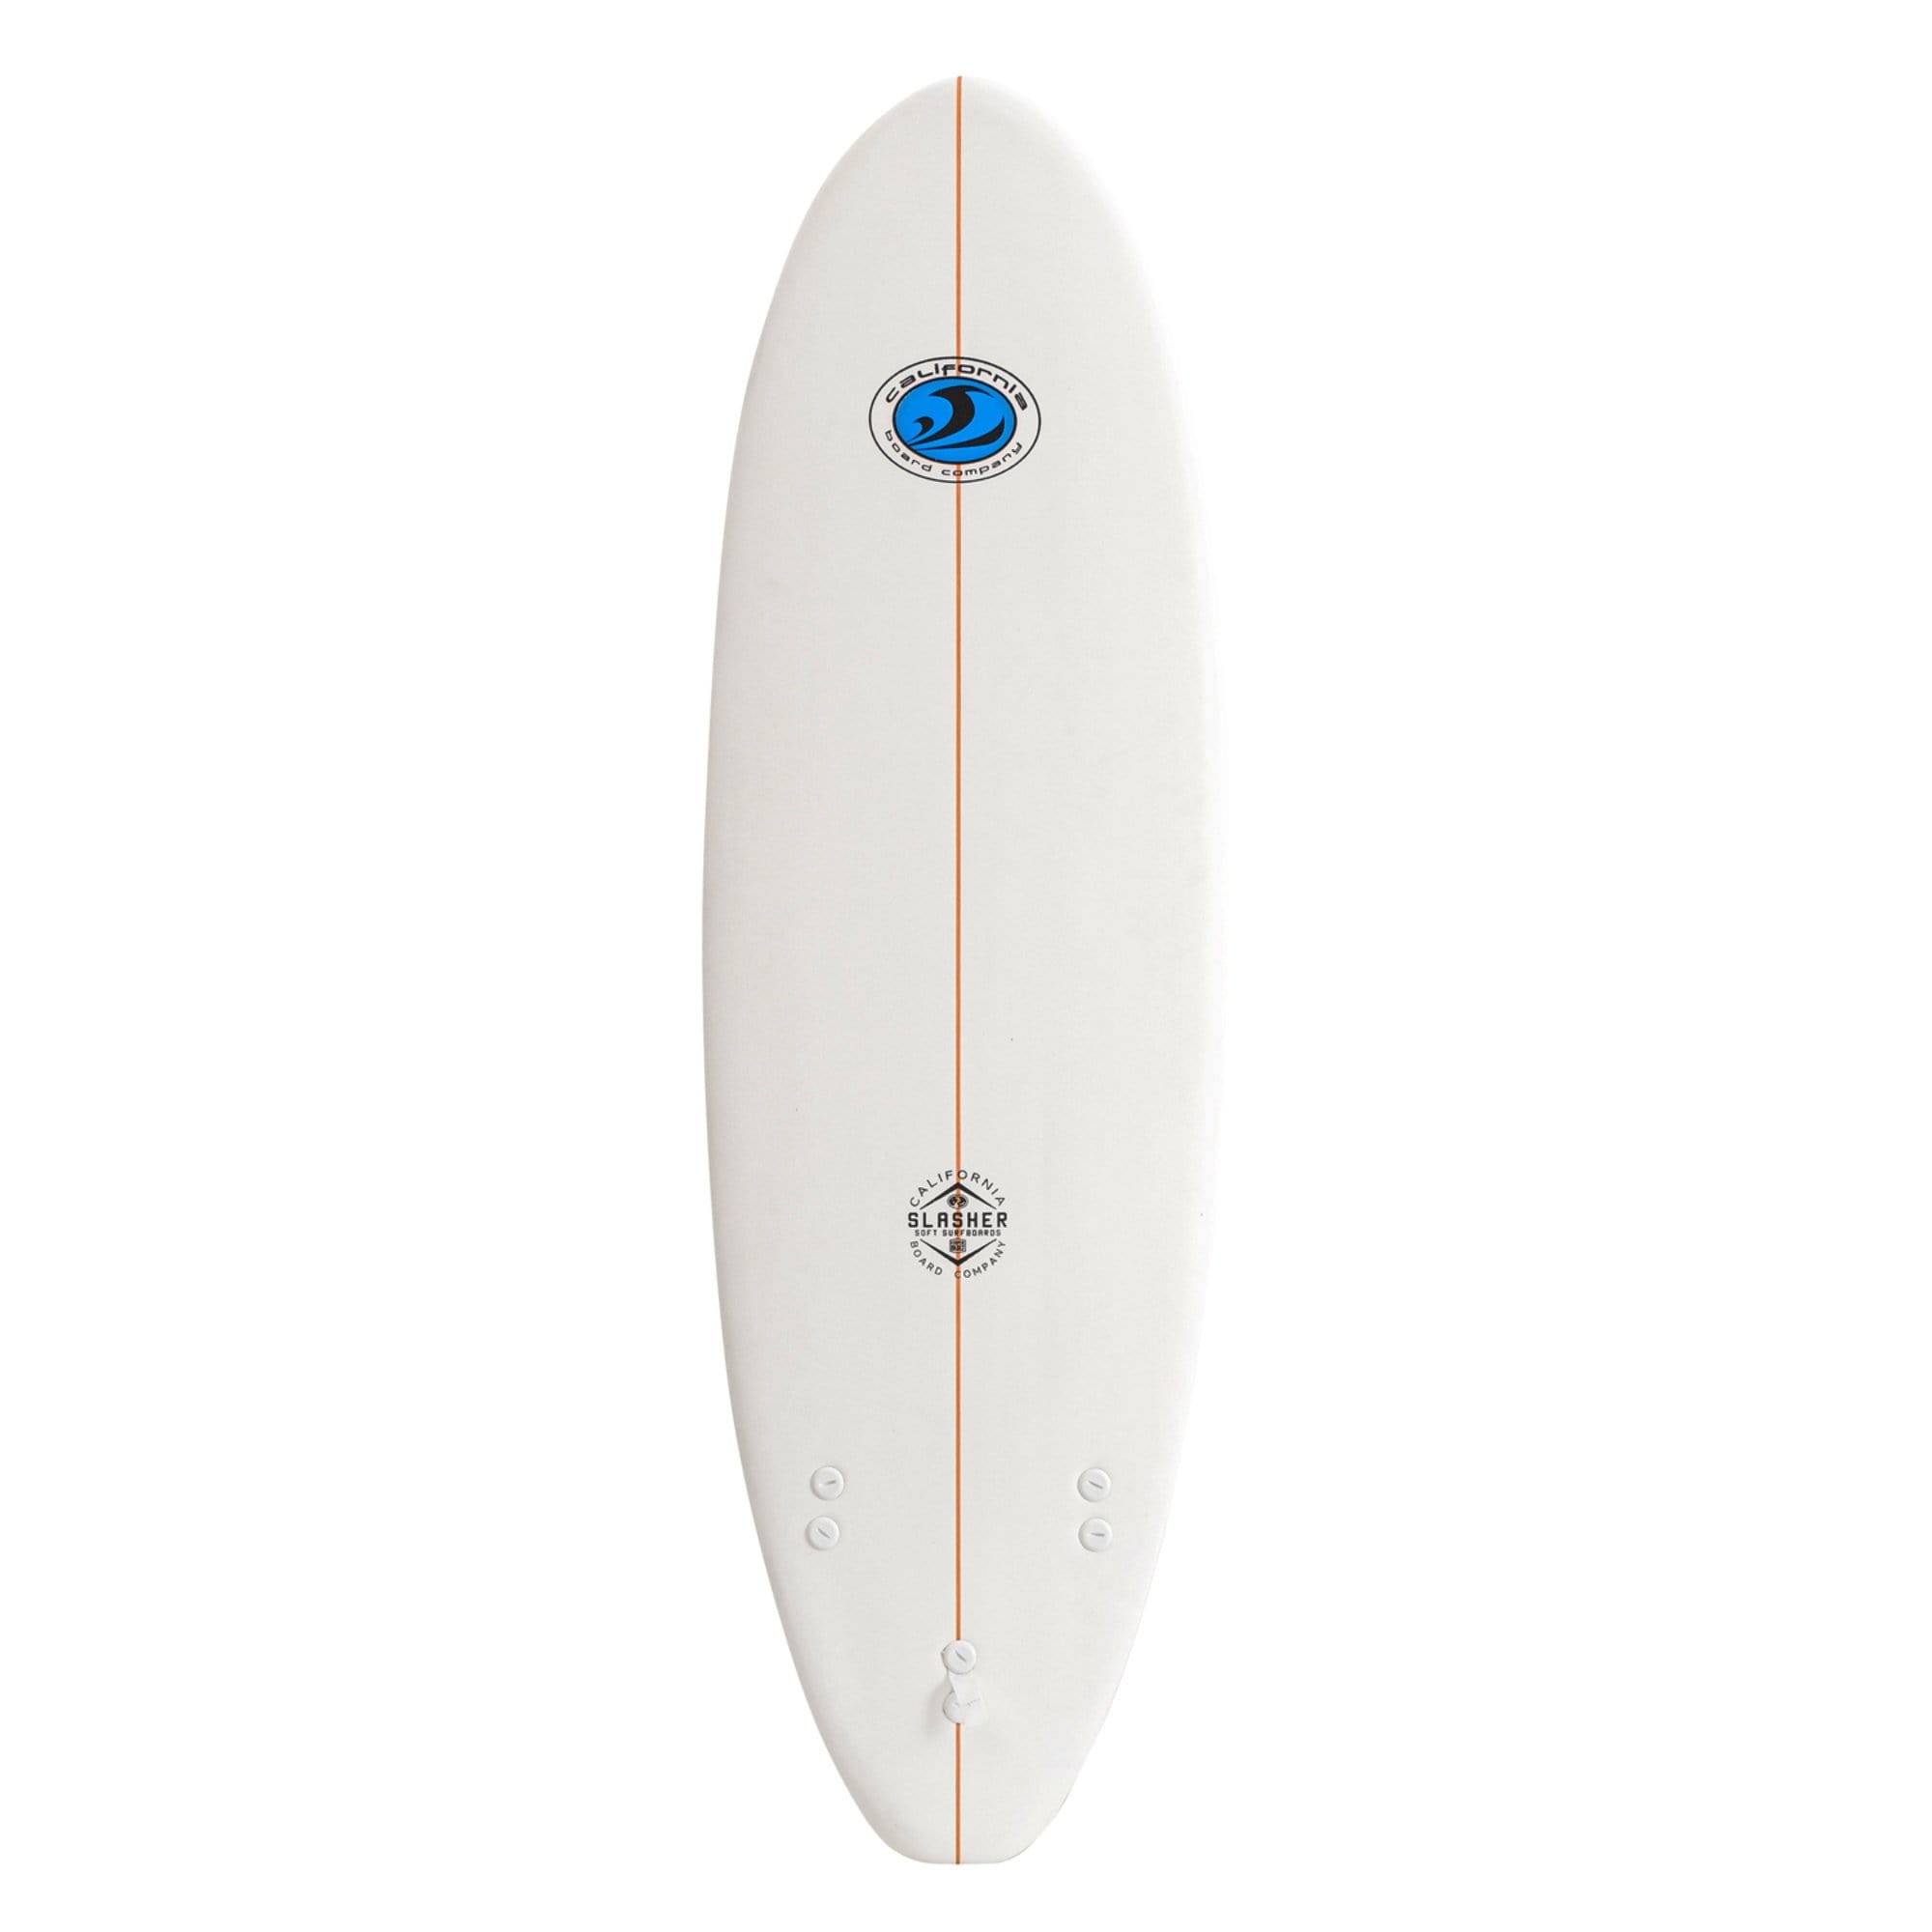 CBC 6' Slasher Foam Surfboard Soft Top